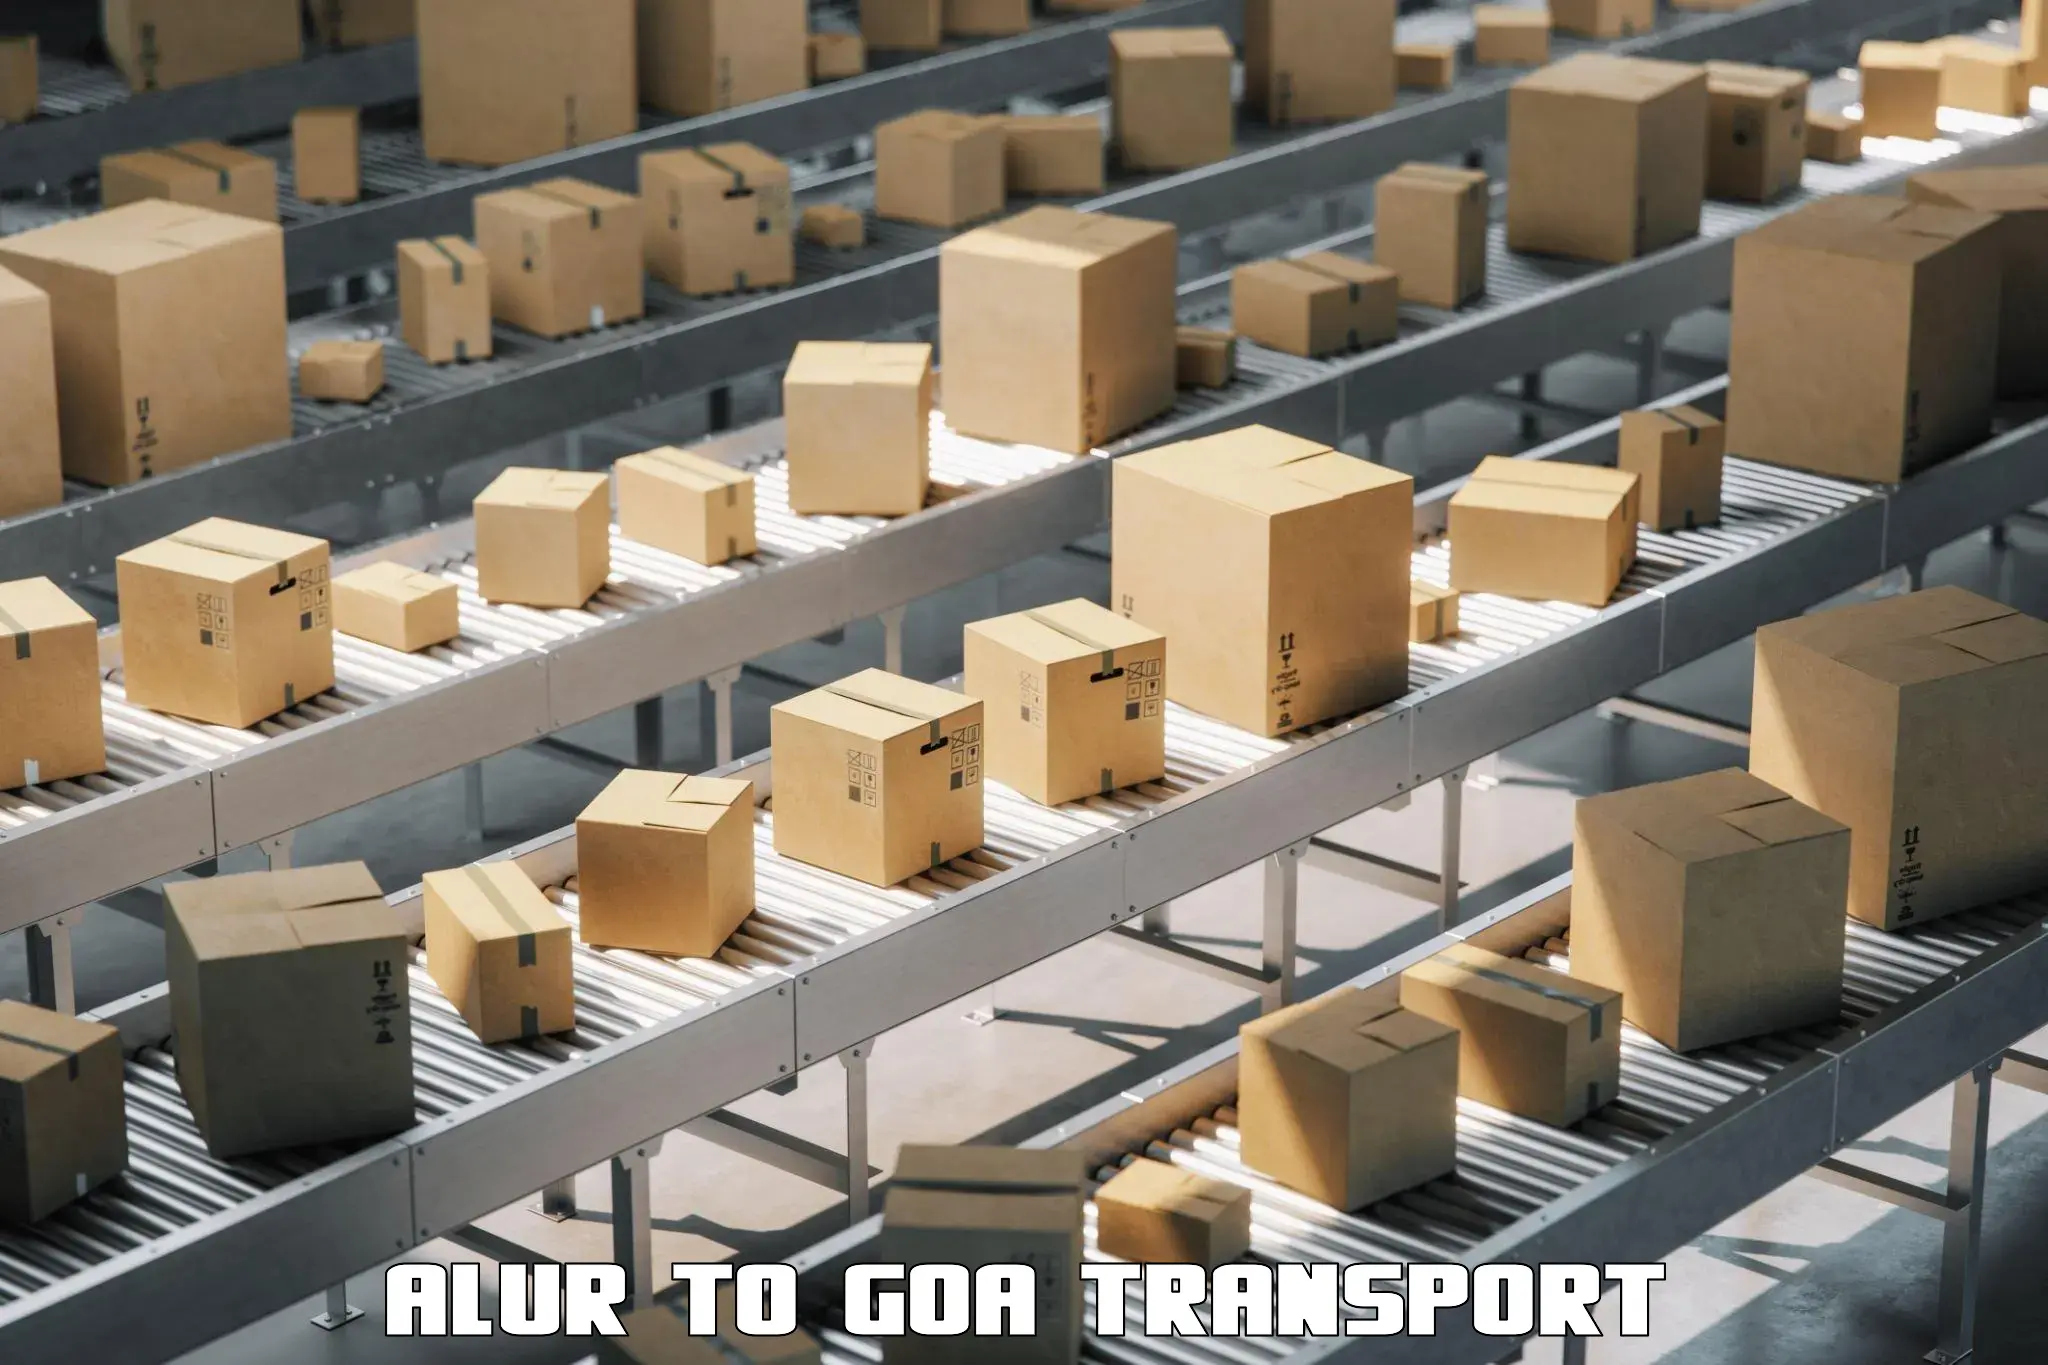 Express transport services Alur to Mormugao Port